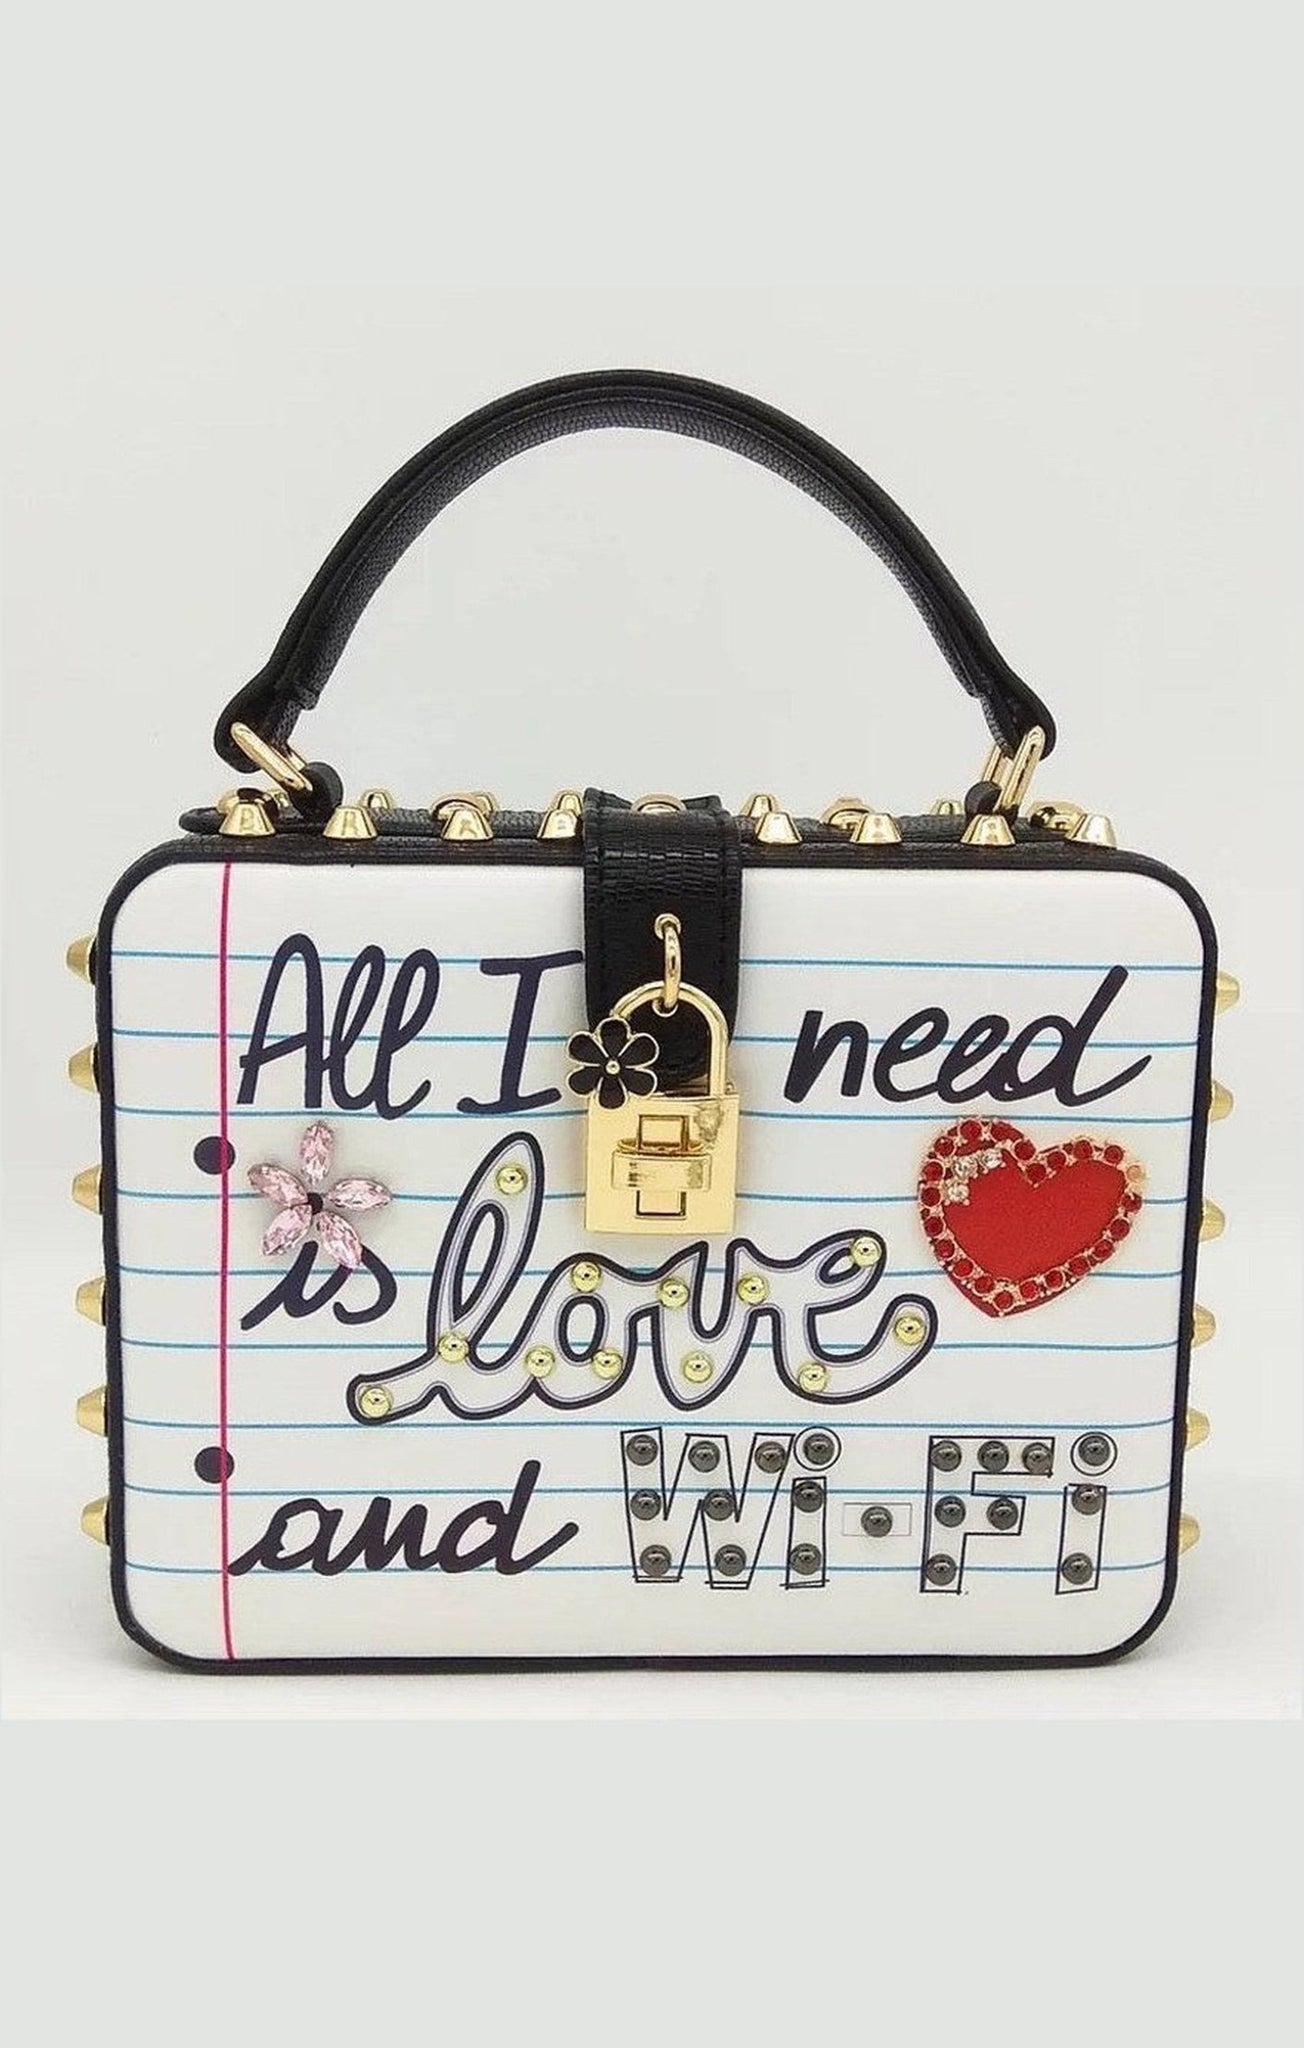 Love bag purse